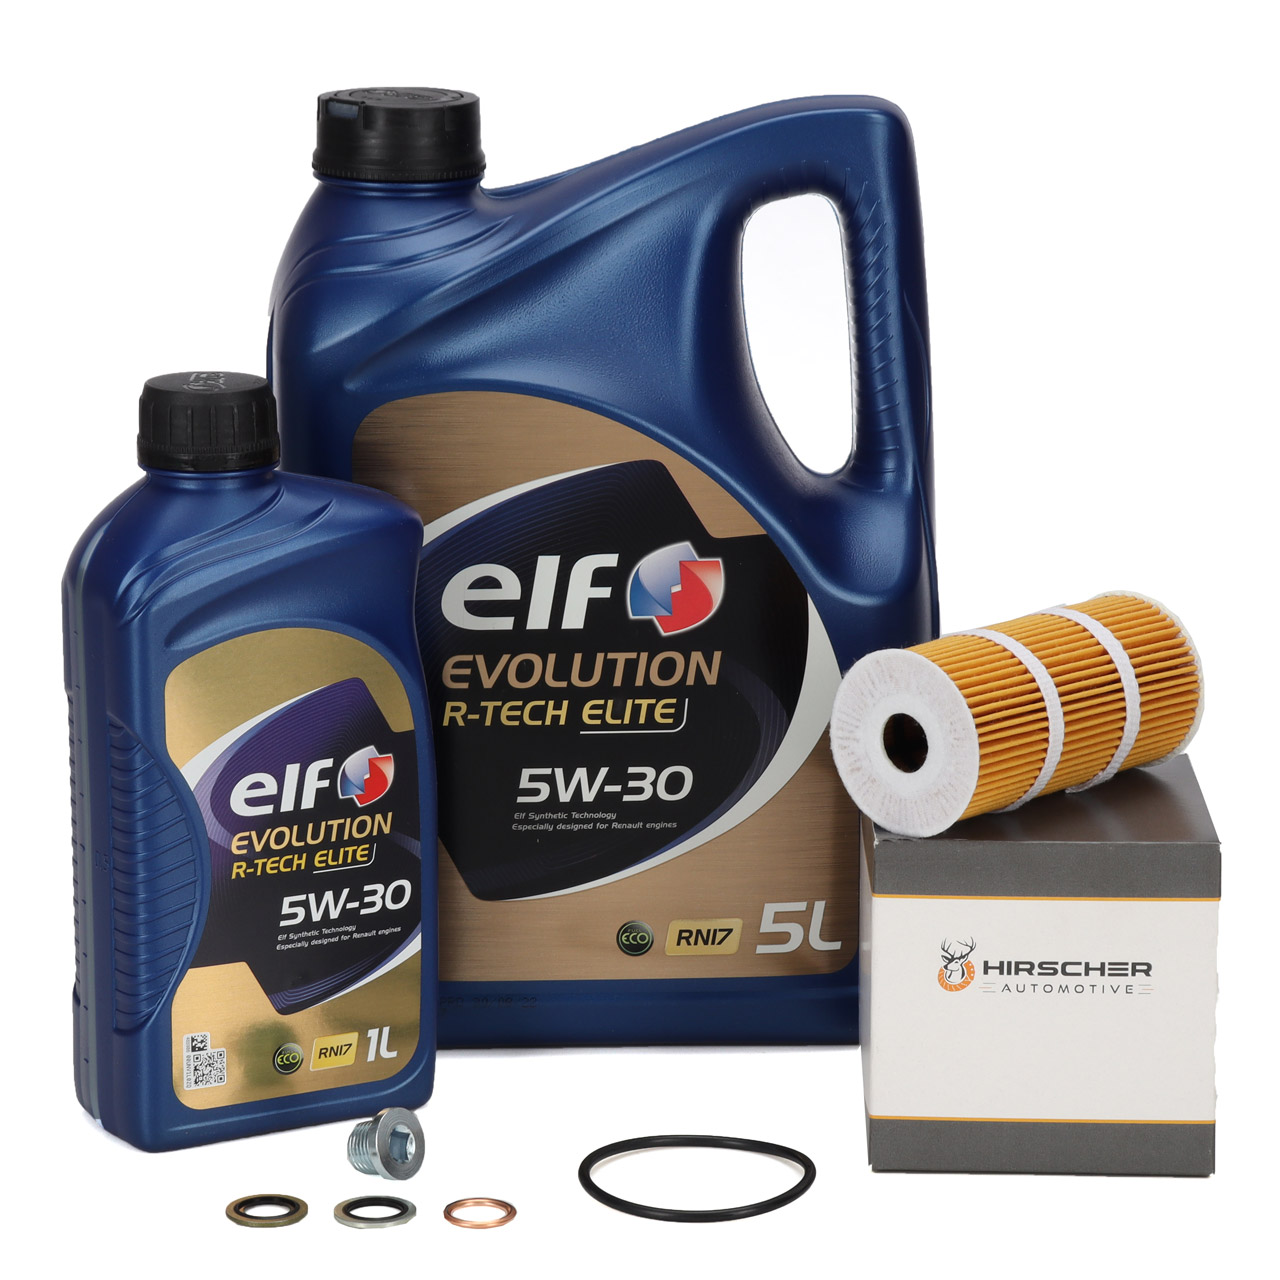 6L elf Evolution R-TECH ELITE 5W30 Motoröl + HIRSCHER Ölfilter RENAULT 152093920R